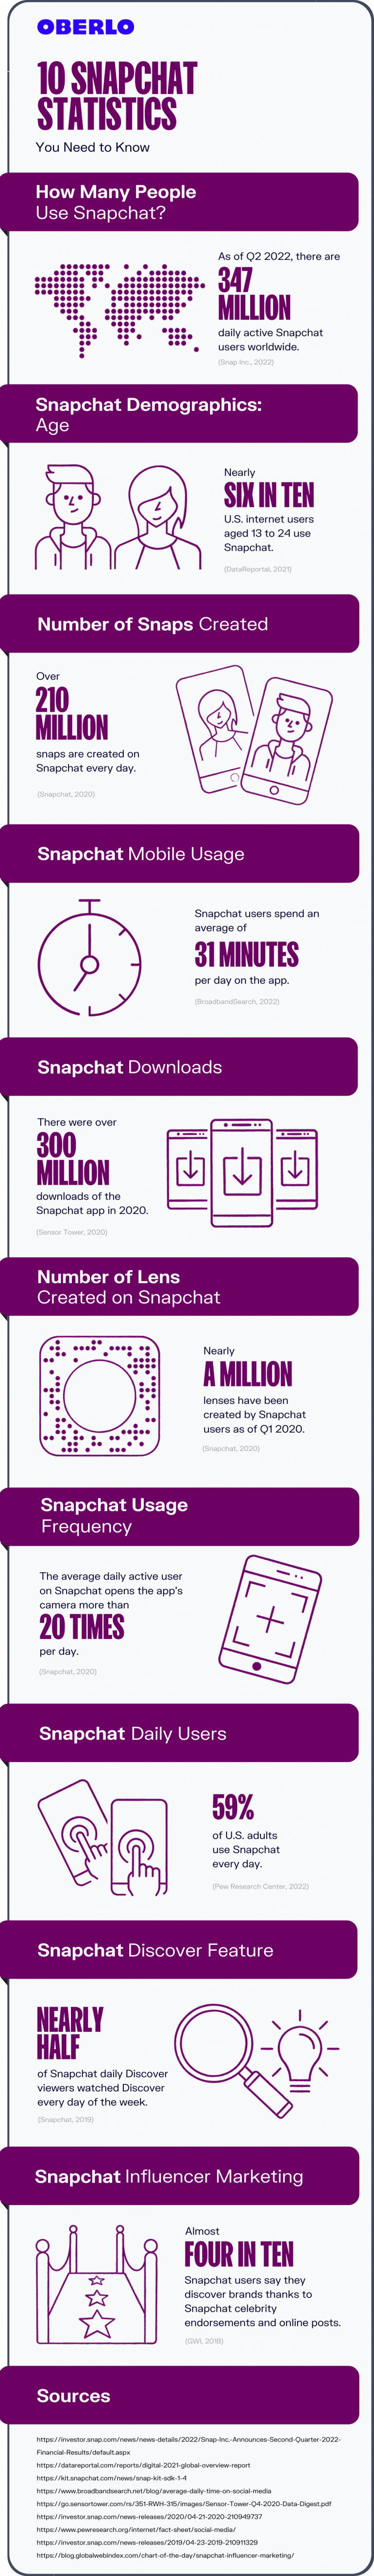 Snapchat-statistieken in een infographic.